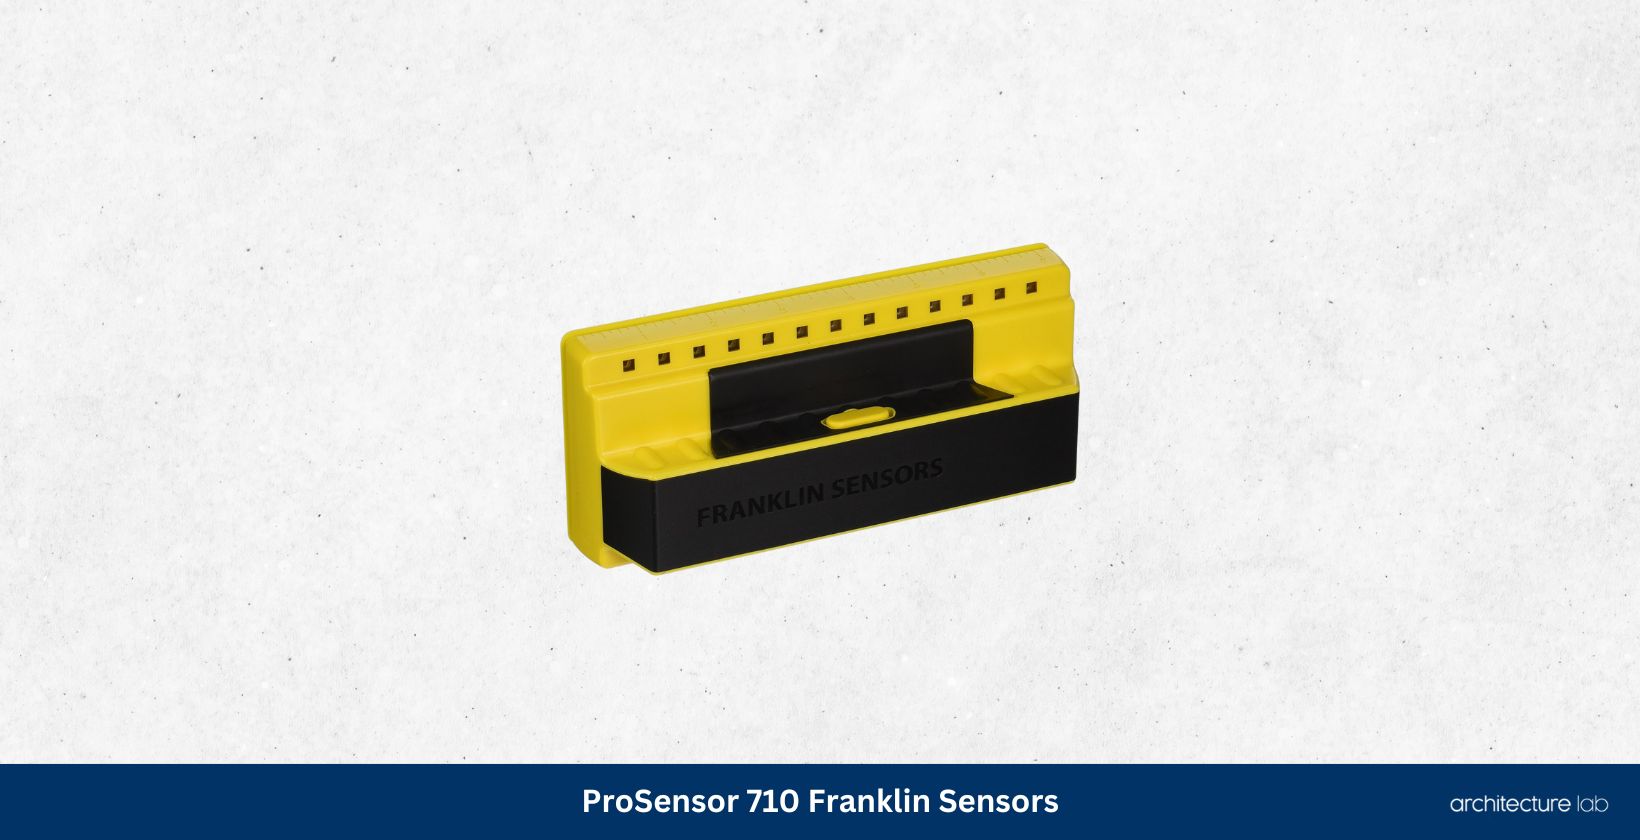 Prosensor 710 franklin sensors